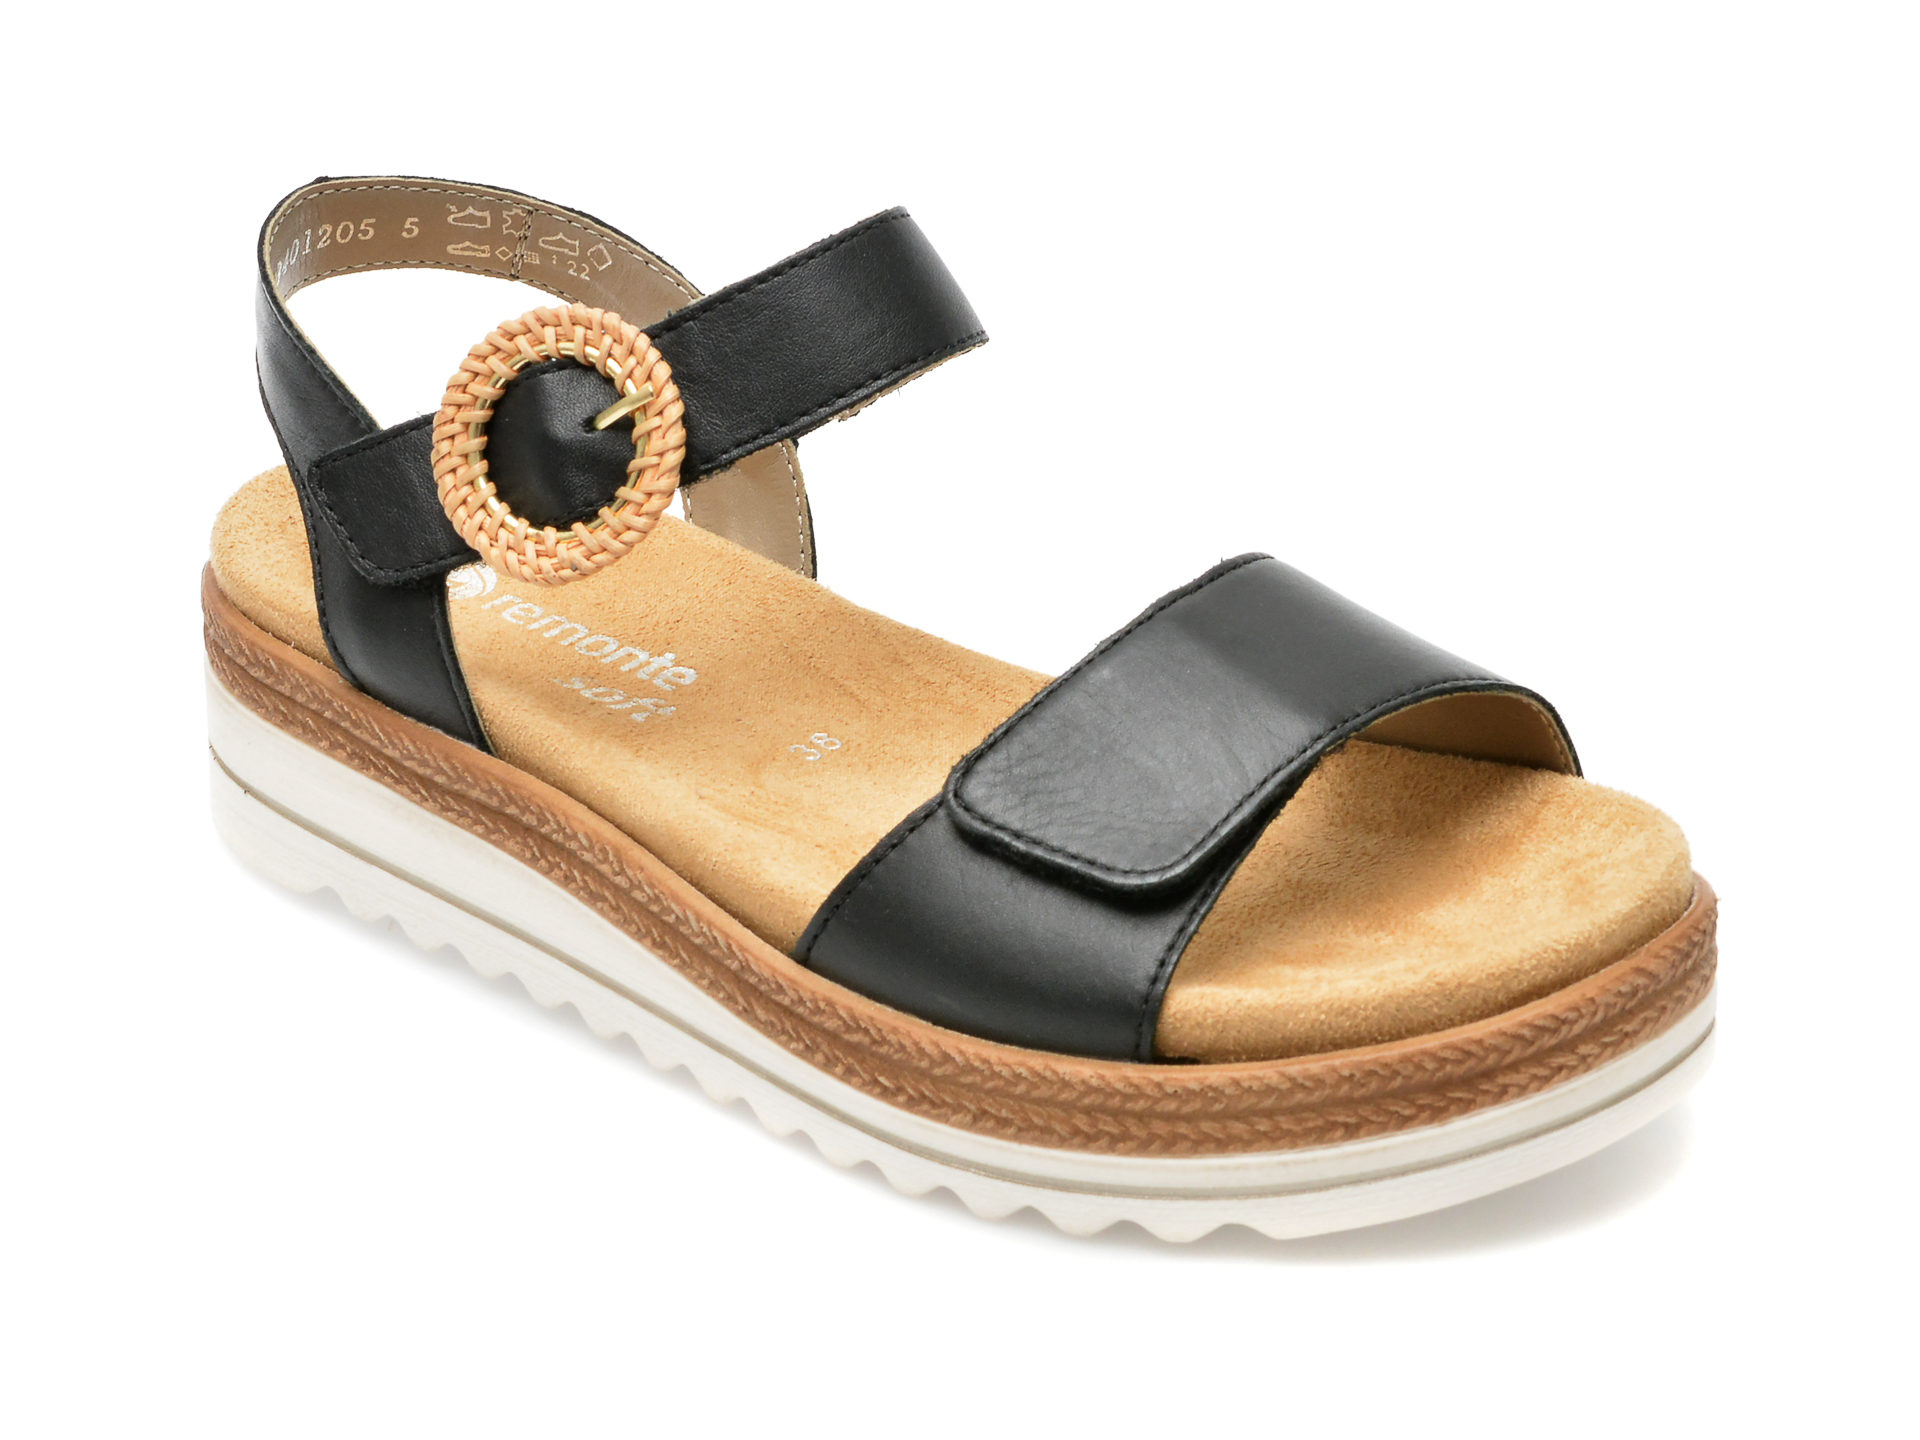 Sandale REMONTE negre, D0Q52, din piele naturala Answear 2023-09-28